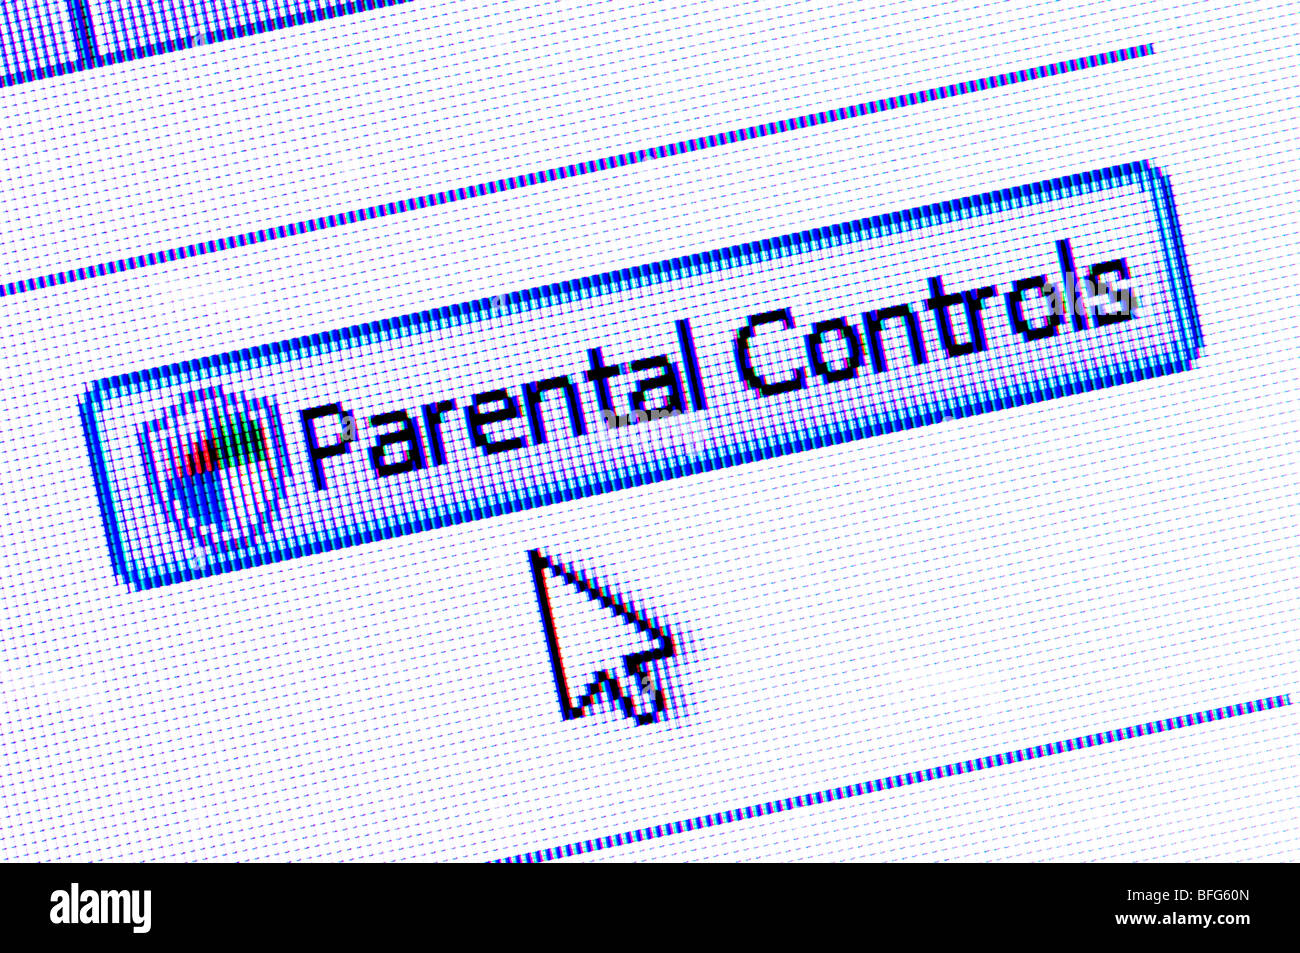 Capture d'écran de la macro réglage de contrôle parental et de l'onglet / flèche du curseur sur un écran d'ordinateur. Banque D'Images